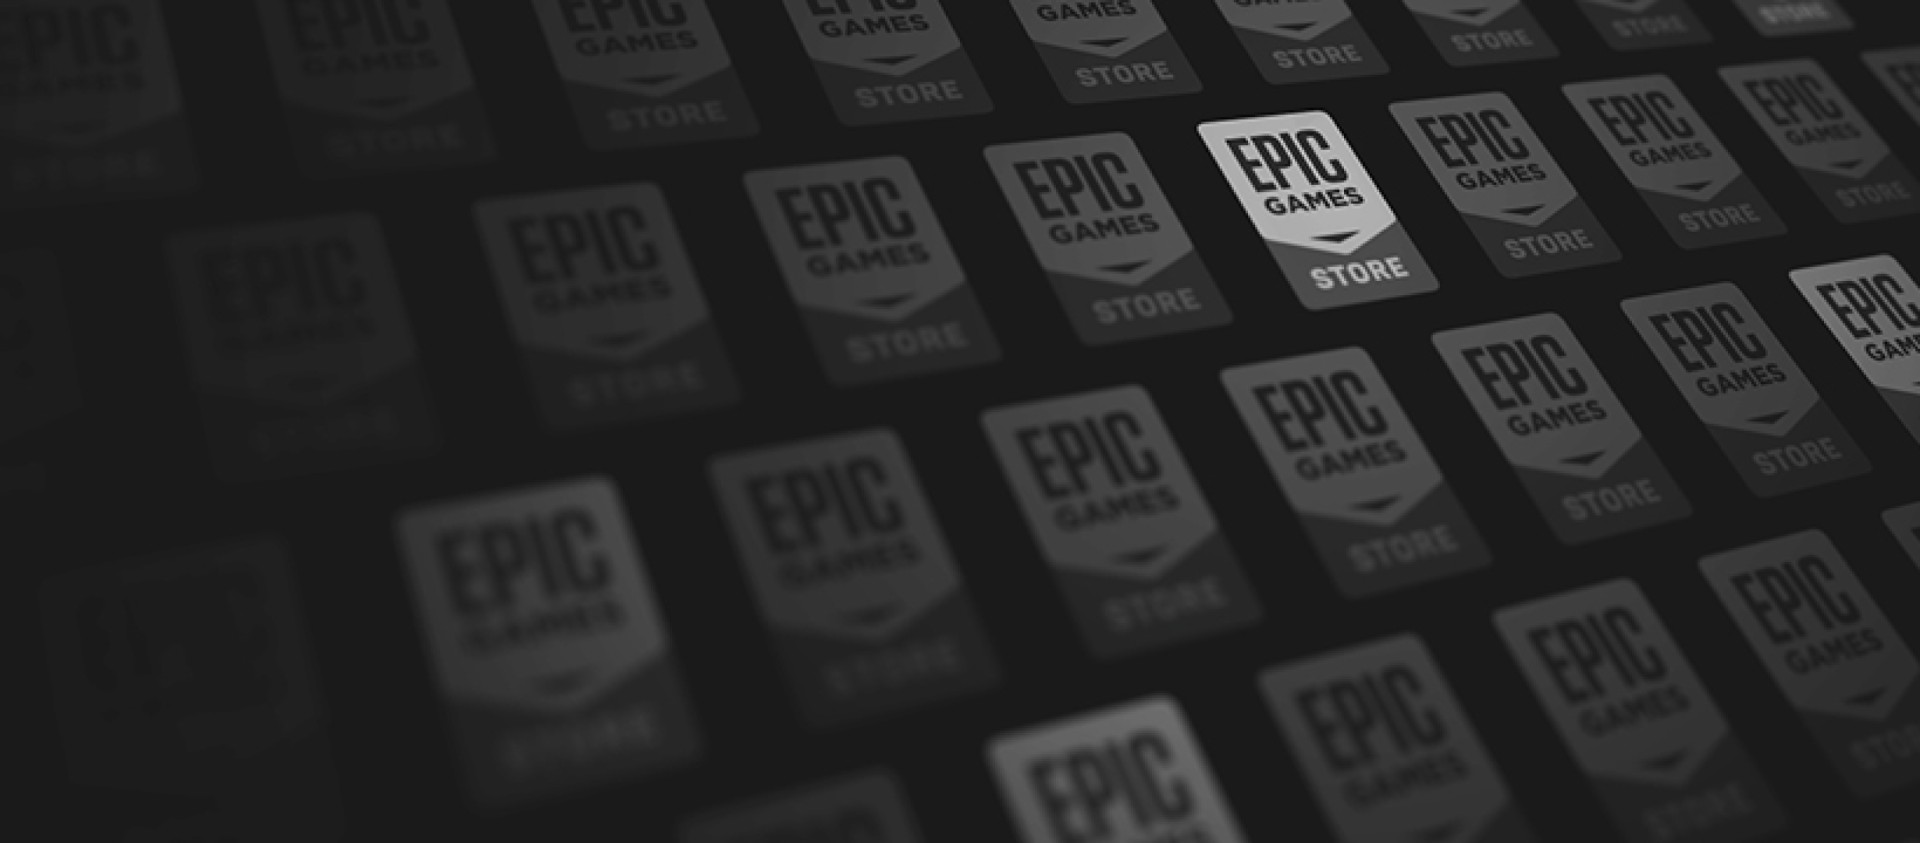 Epic Games ยังคงเดินหน้าแจกเกมฟรีอย่างต่อเนื่องตลอดปี ค.ศ. 2023